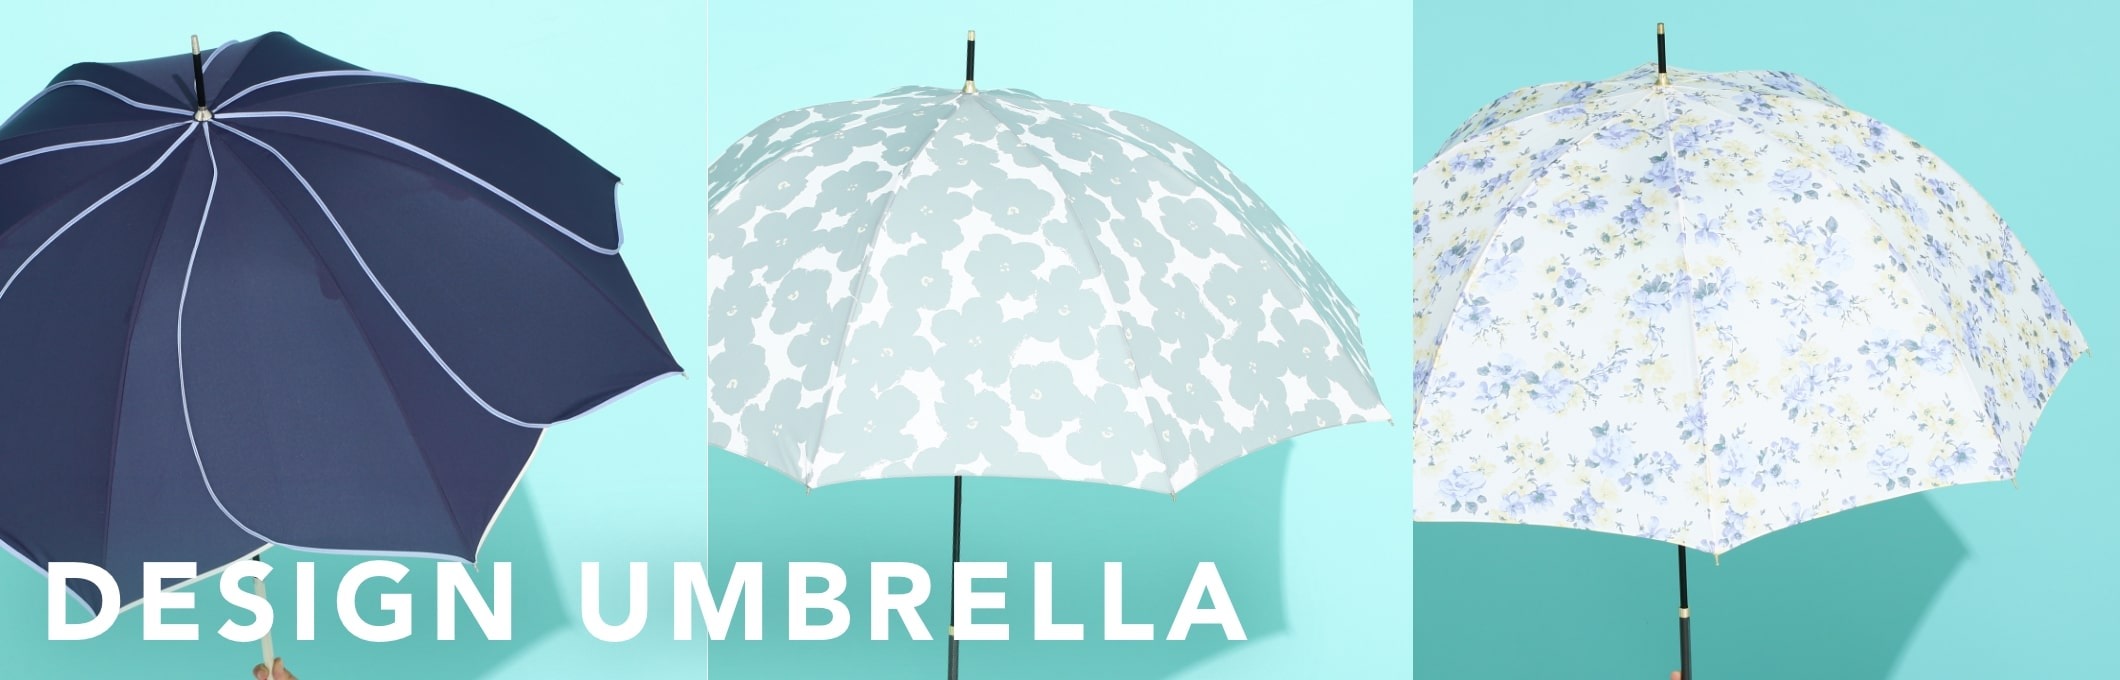 ファッションのように選んで楽しめるデザイン性の高い雨傘